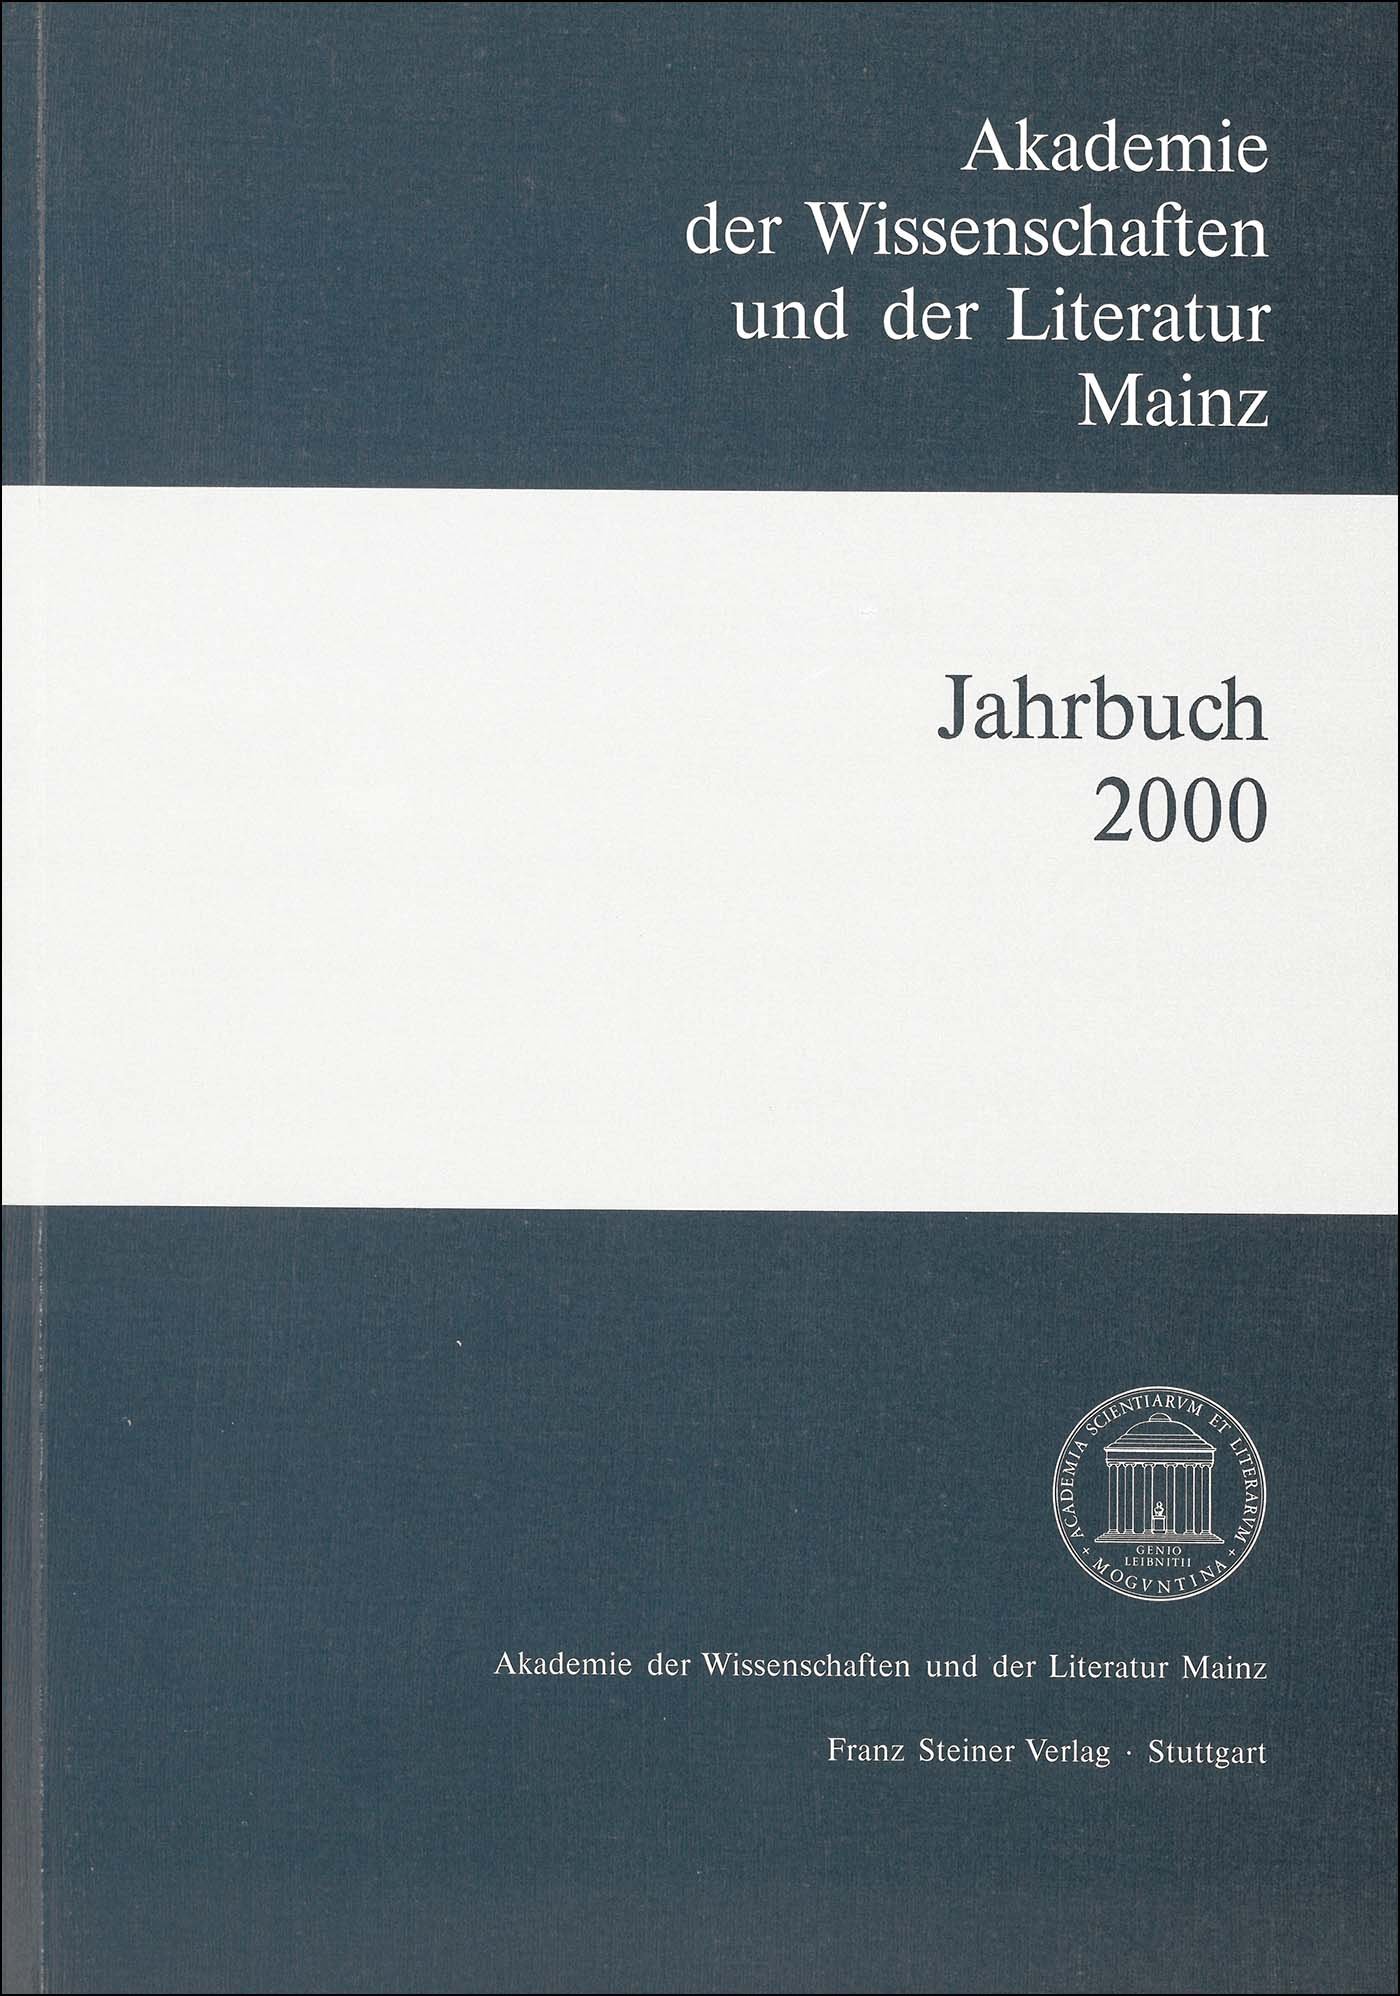 Akademie der Wissenschaften und der Literatur Mainz – Jahrbuch 51 (2000)